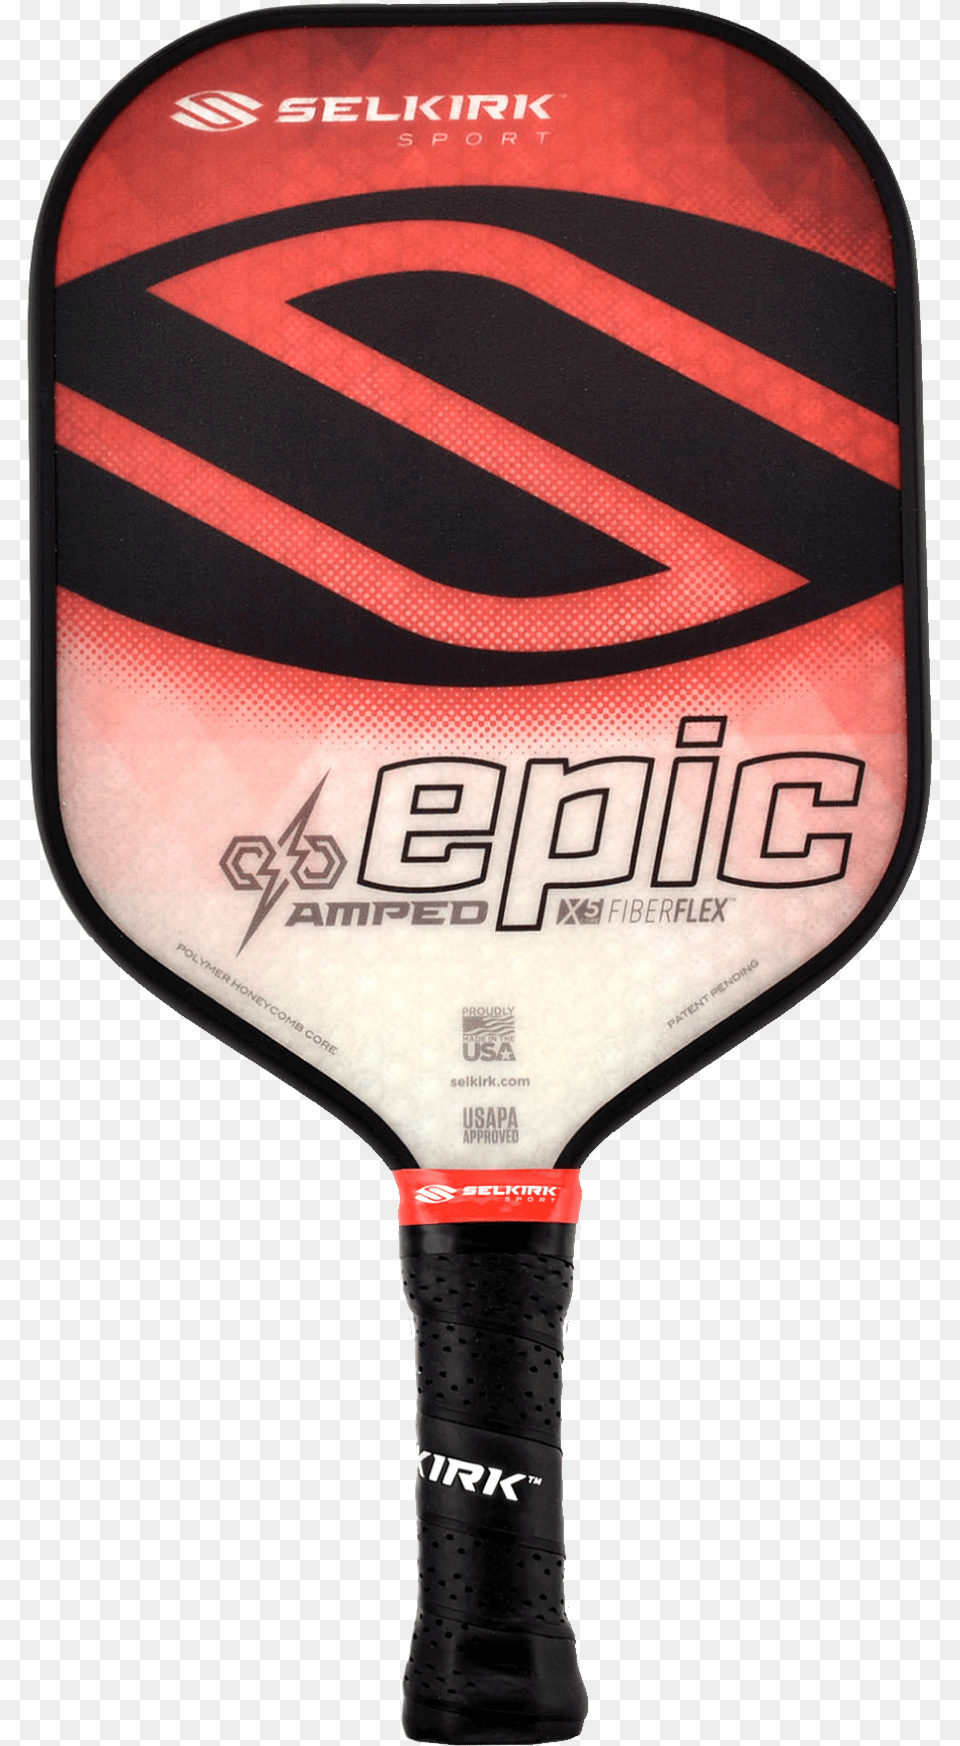 Epic Games Honeycomb Selkirk Paddle, Racket, Sport, Tennis, Tennis Racket Free Png Download